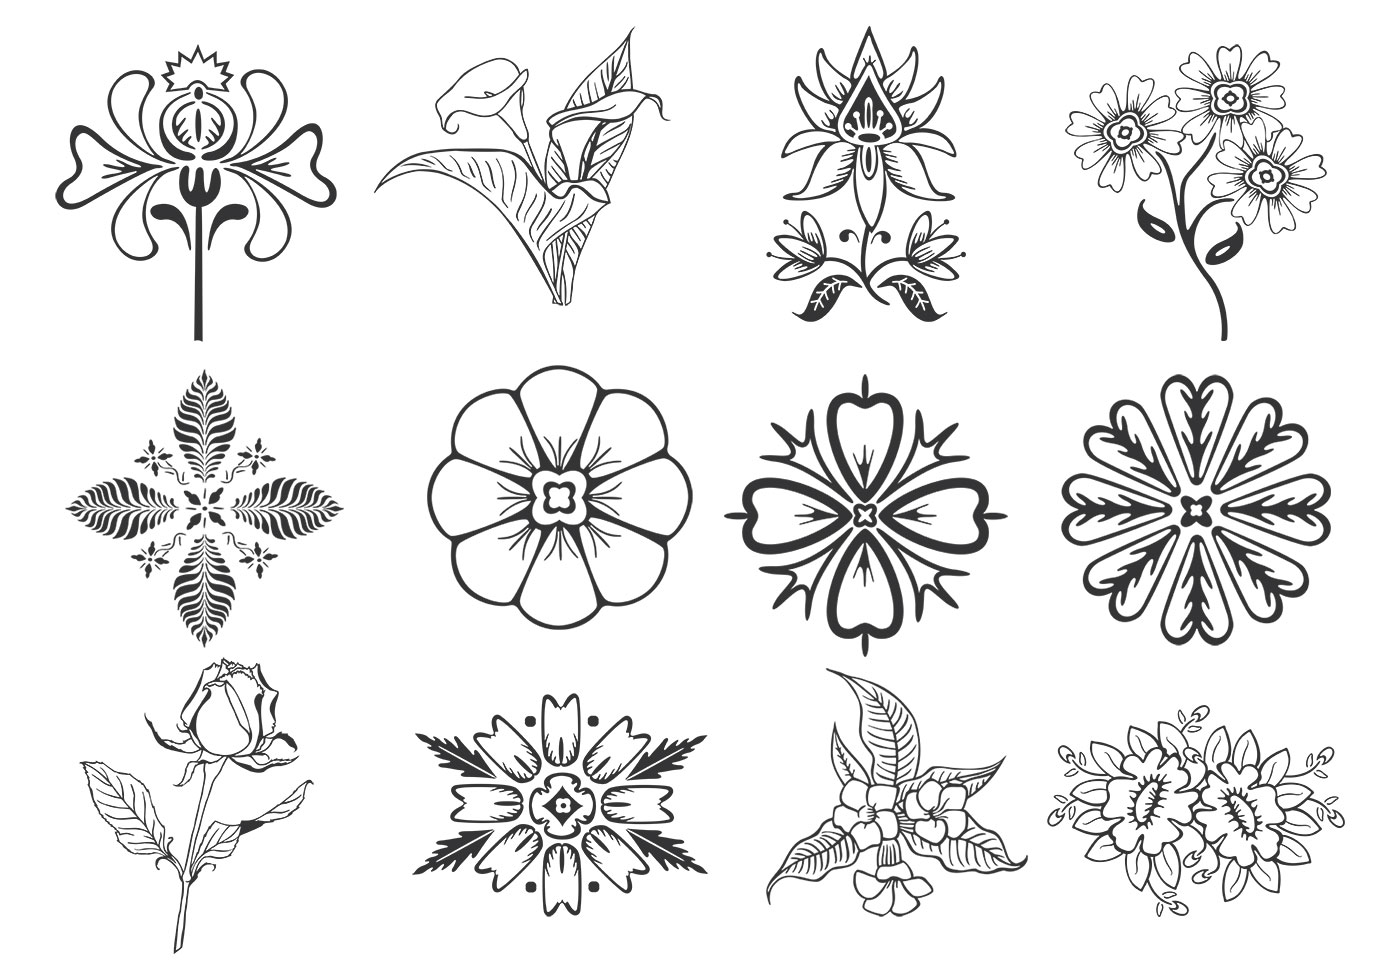 Download Floral Design Elements Vector Pack - Download Free Vectors, Clipart Graphics & Vector Art